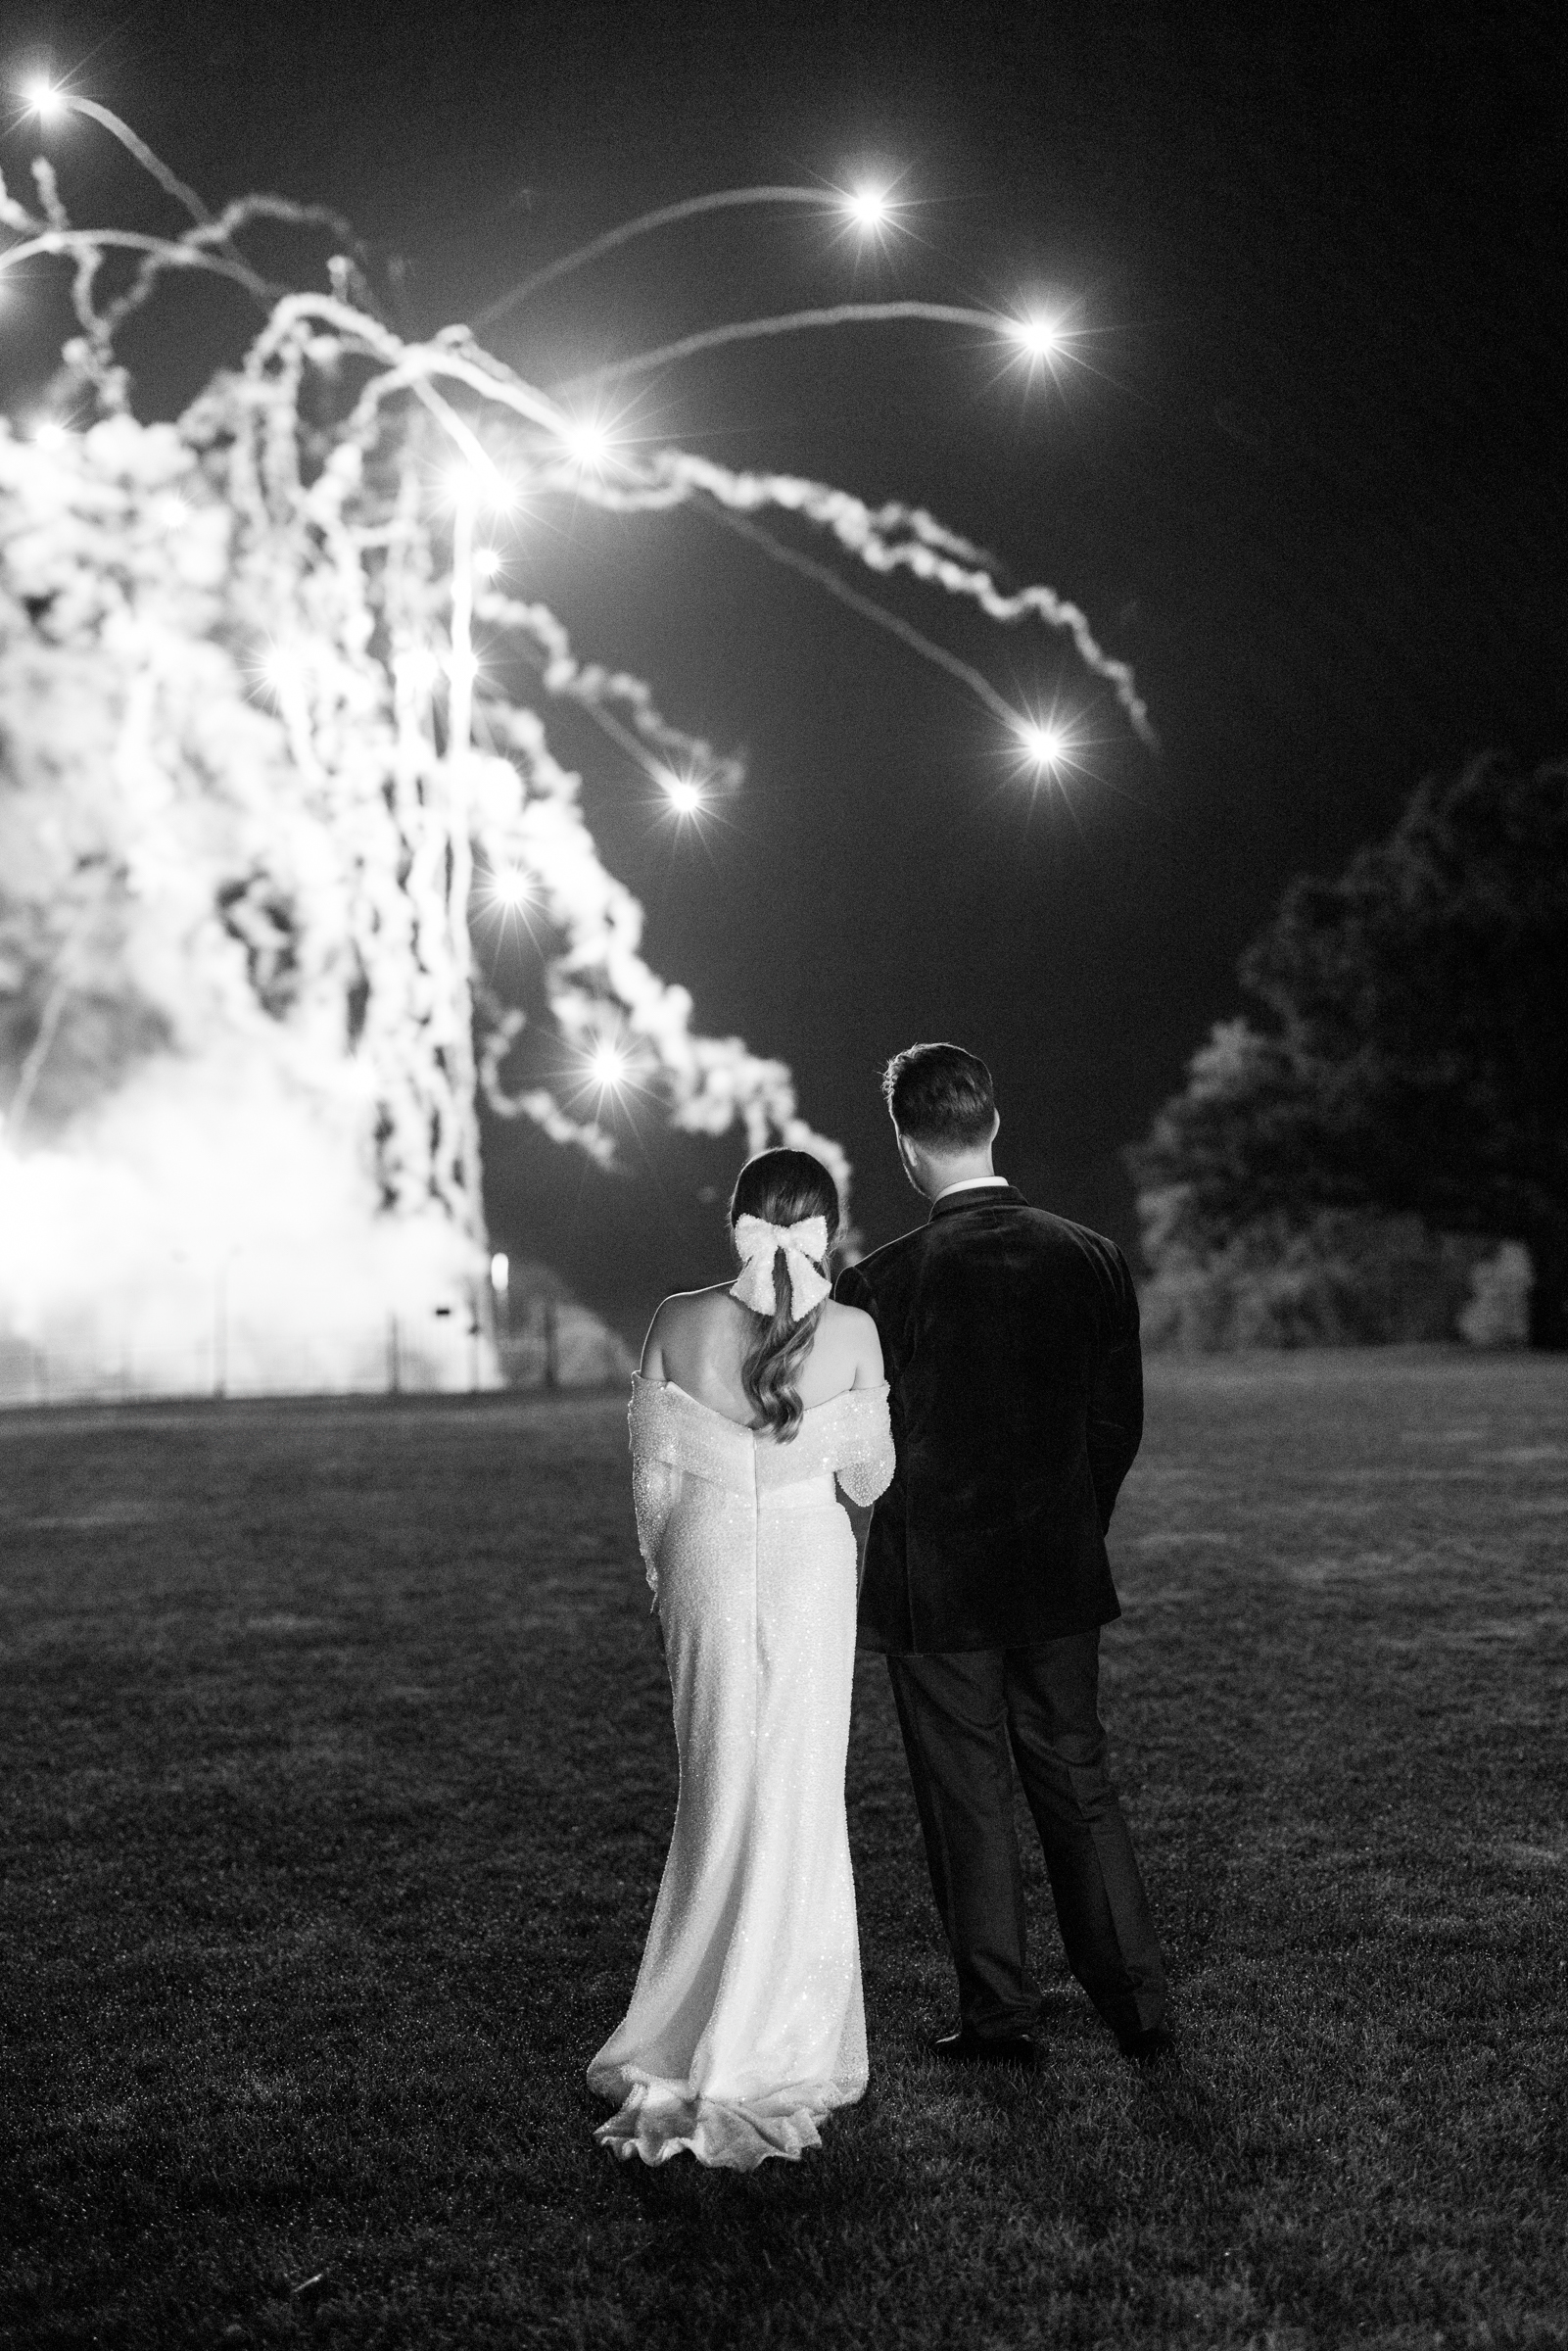 Somerley House wedding photography of fireworks at luxury wedding at Somerley House